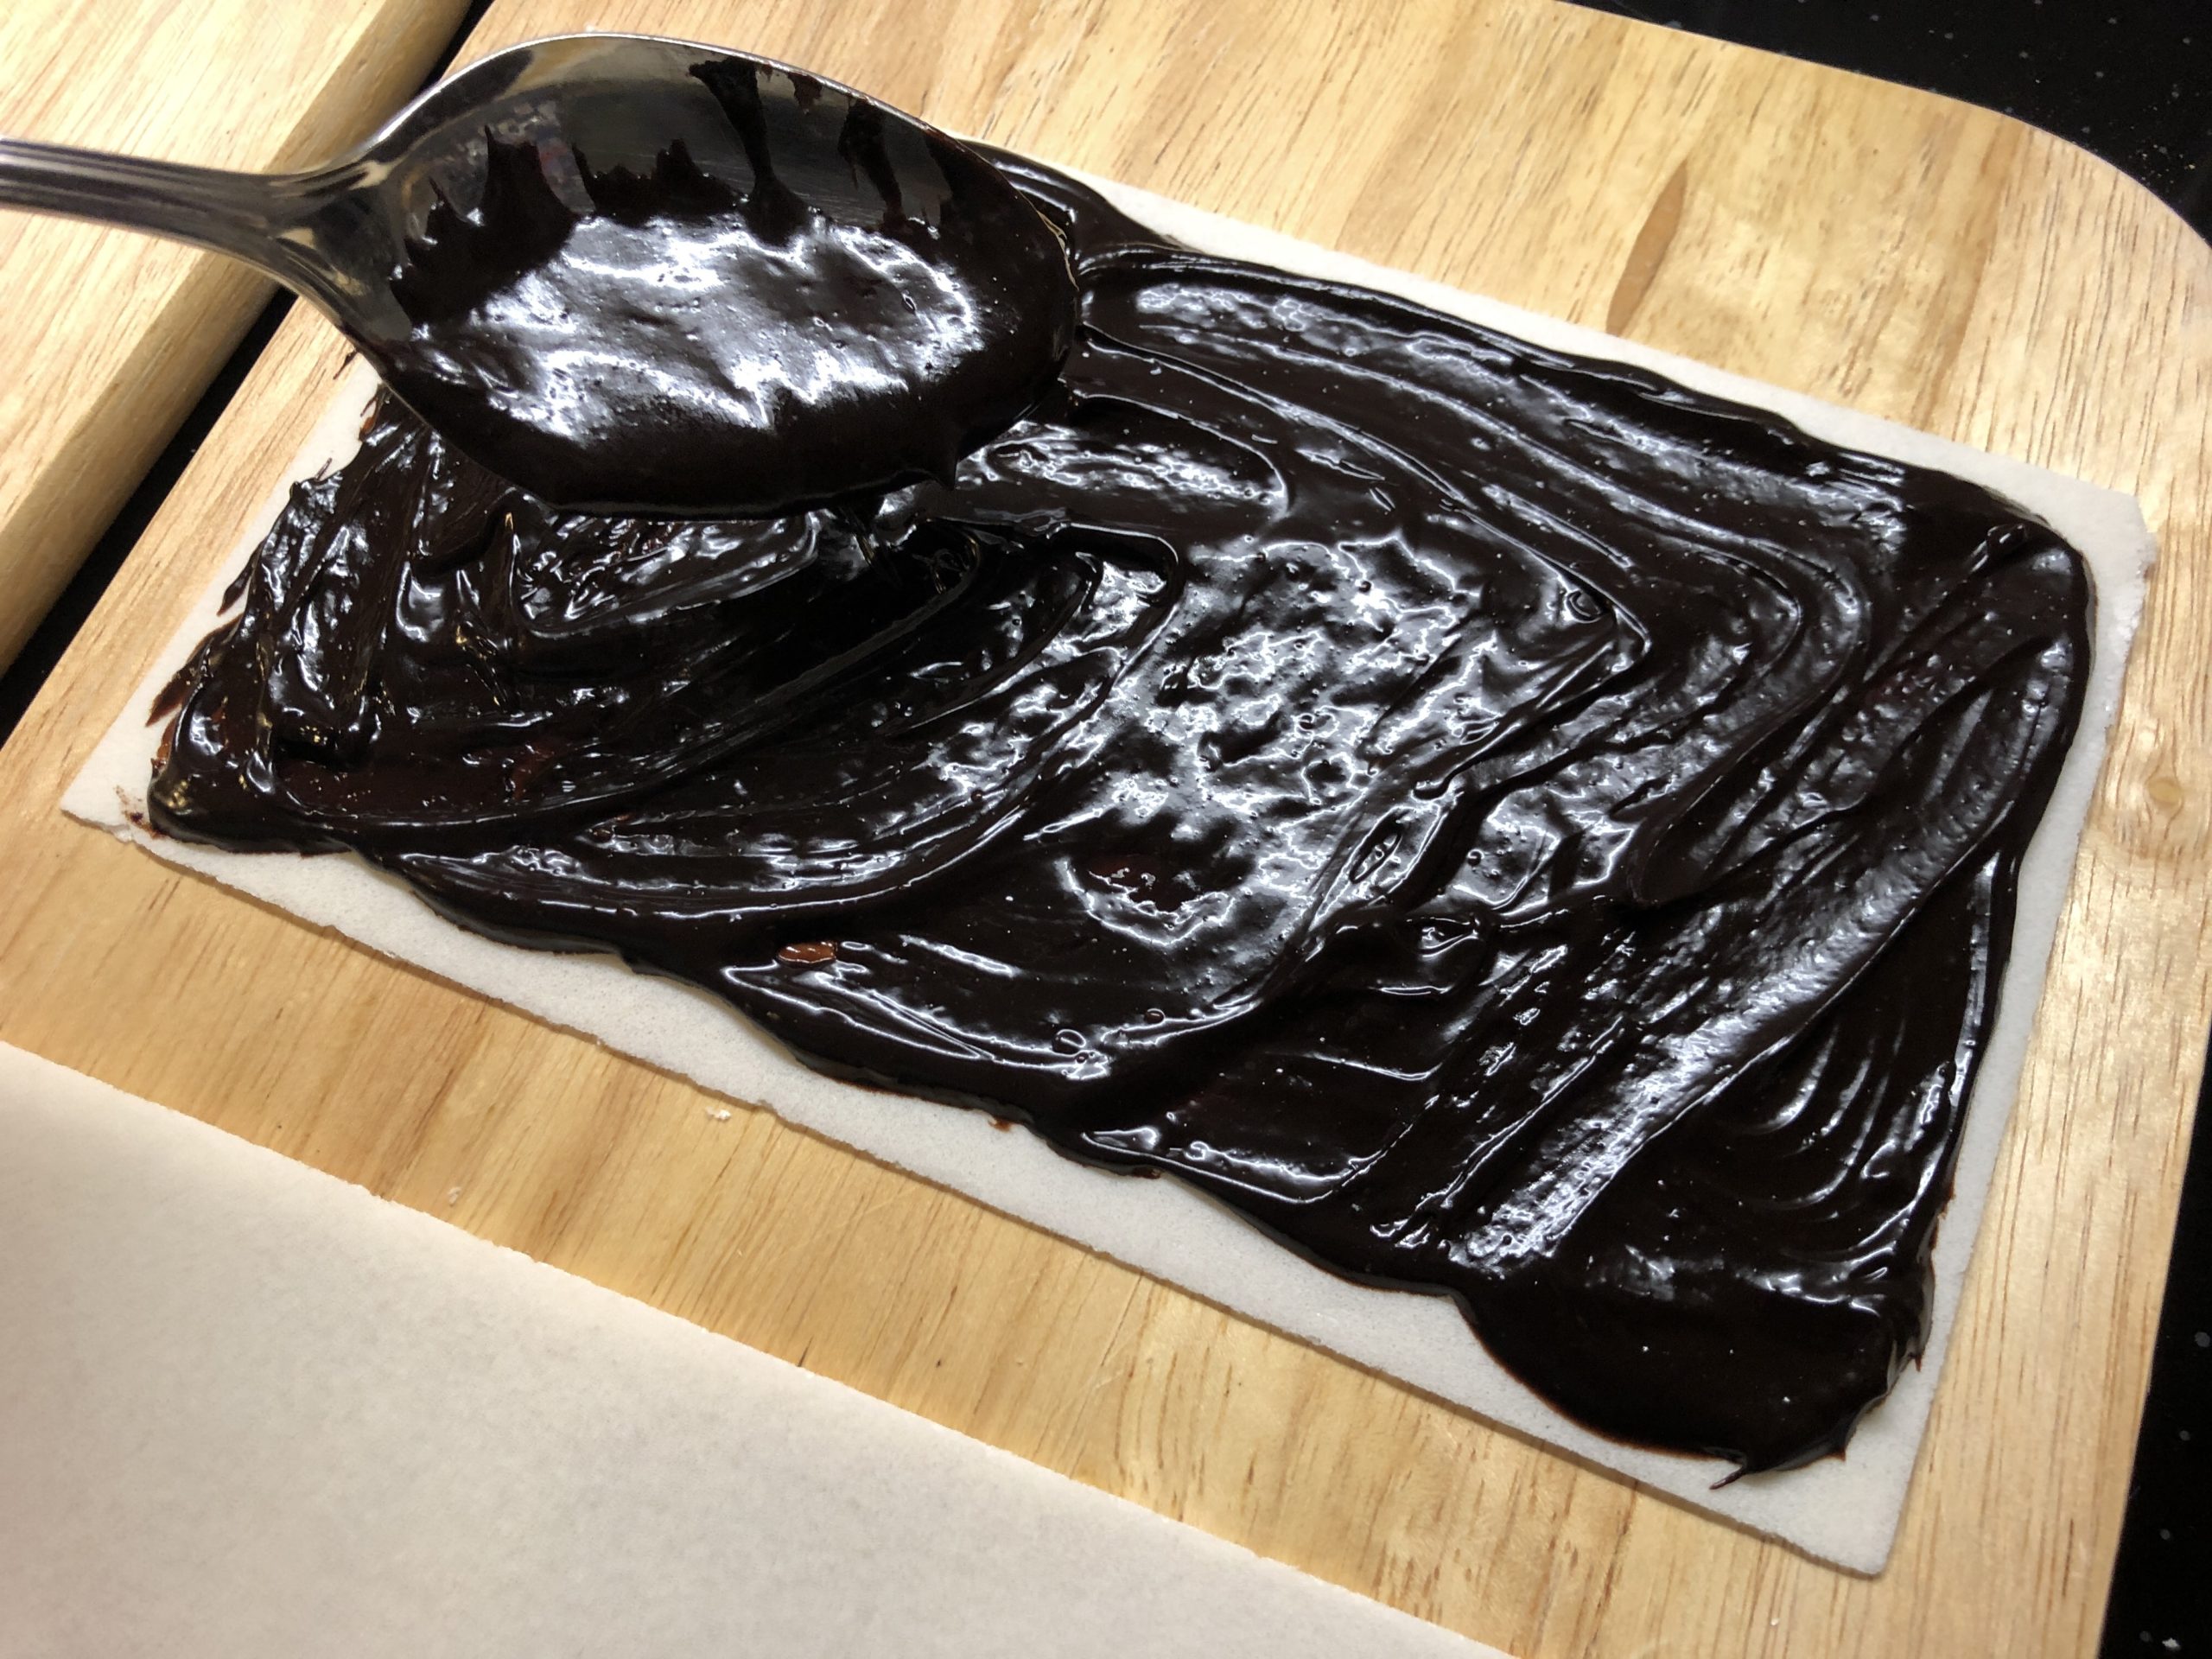 3. Bild zum Schritt 12 für die Kinder-Beschäftigung: 'Gebt einen großen Klecks abgekühlte Schokoladenmasse auf die Oblate und...'